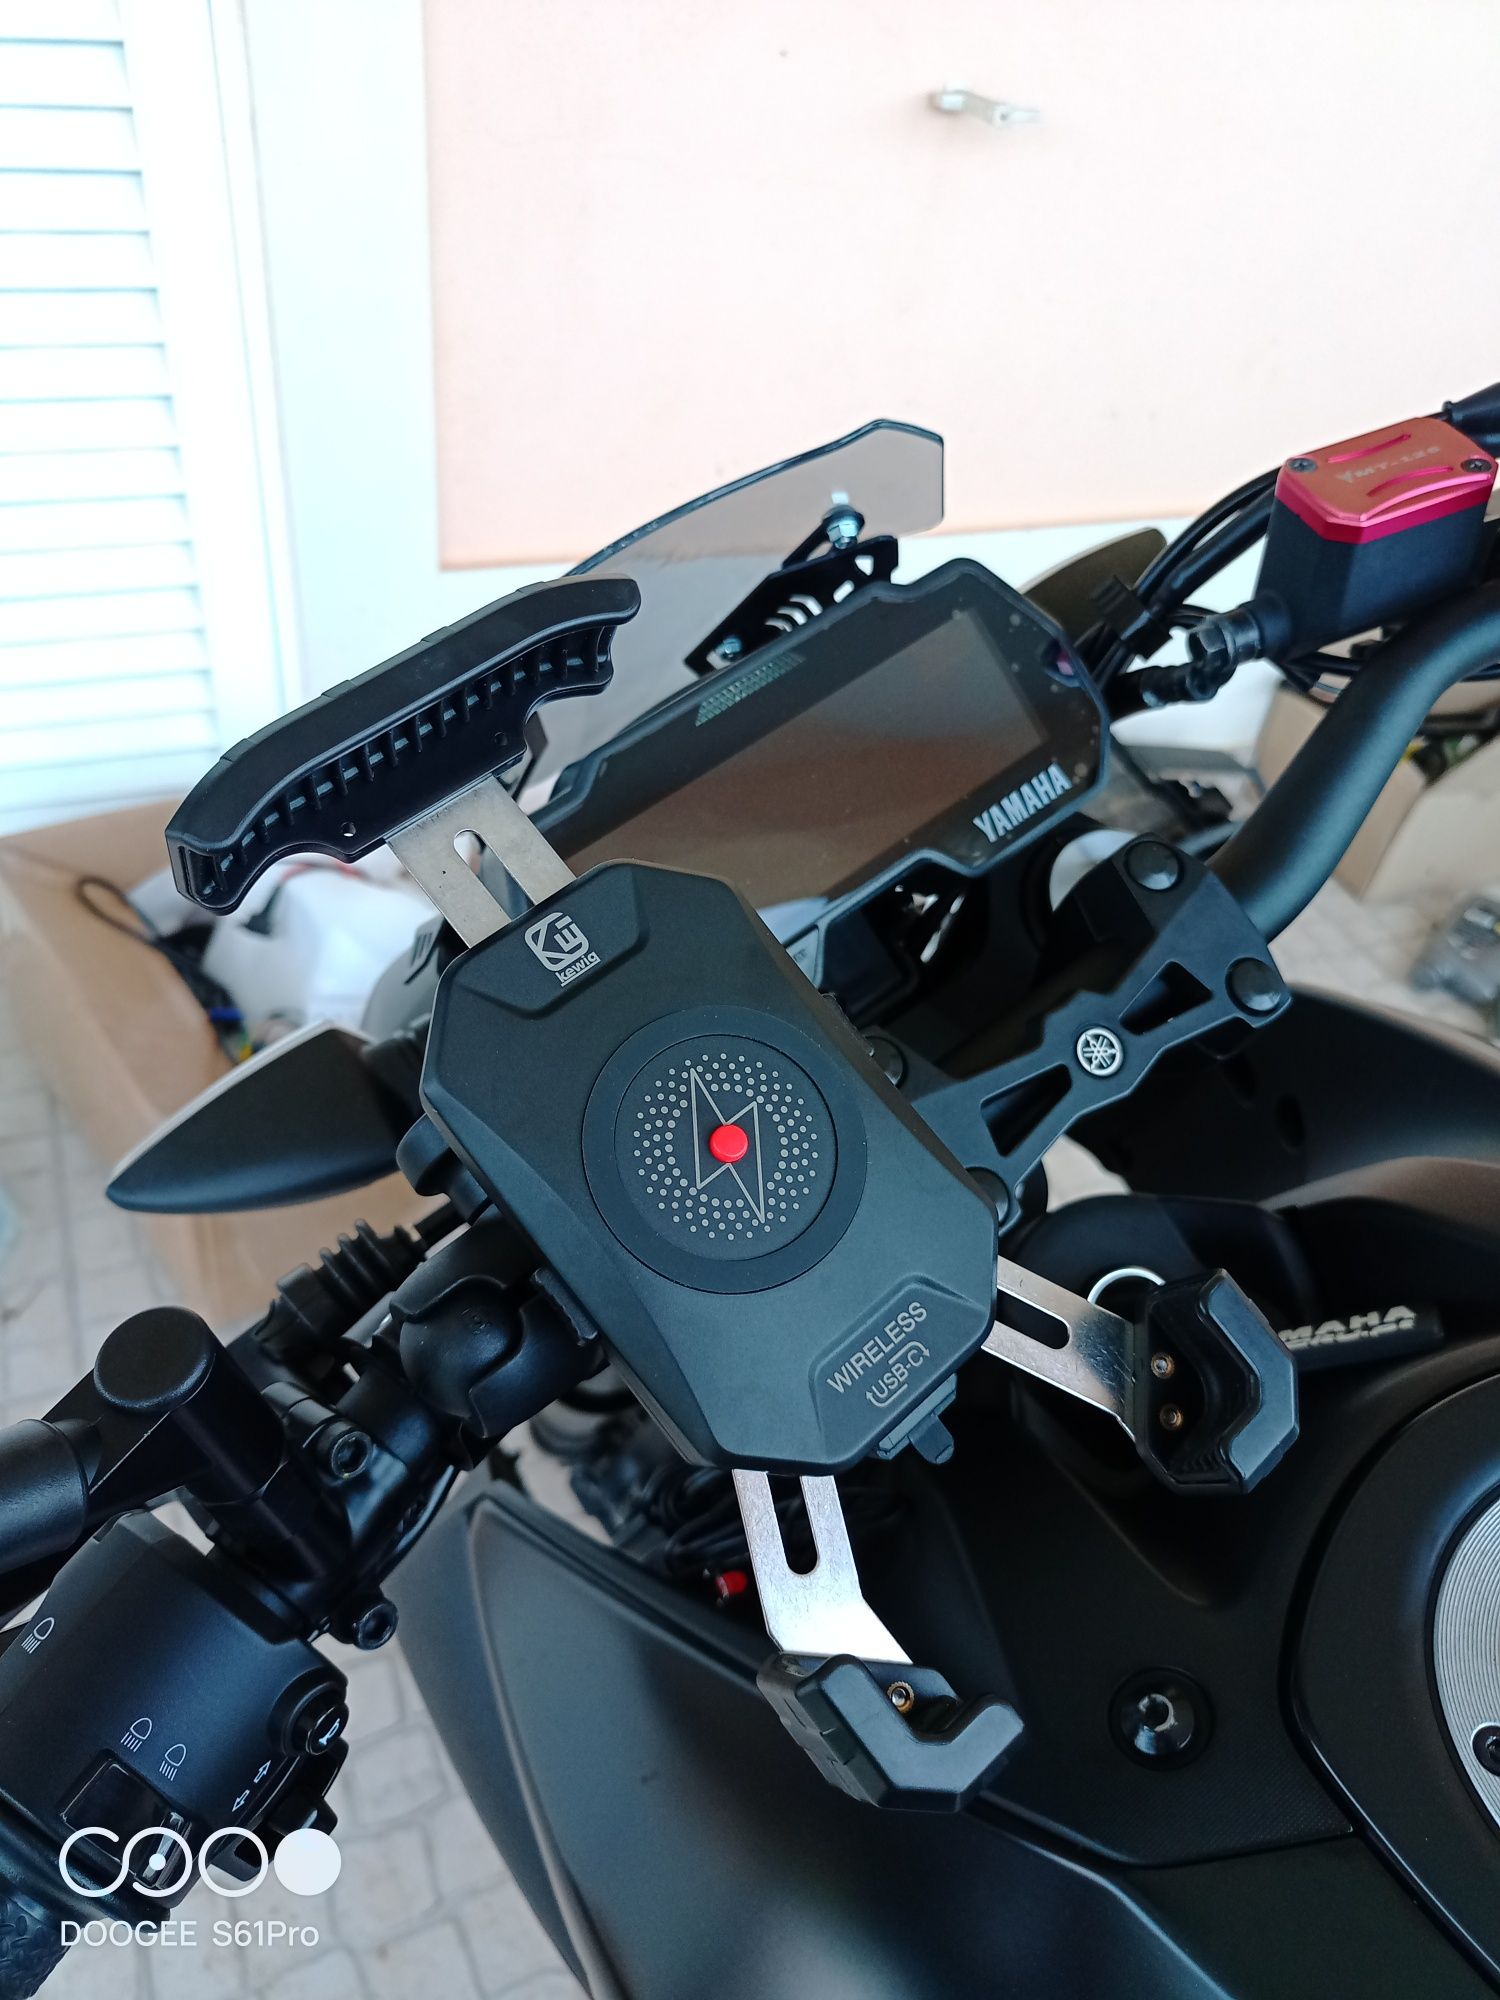 Suporte telemóvel wirless moto de qualidade com sistema antitref